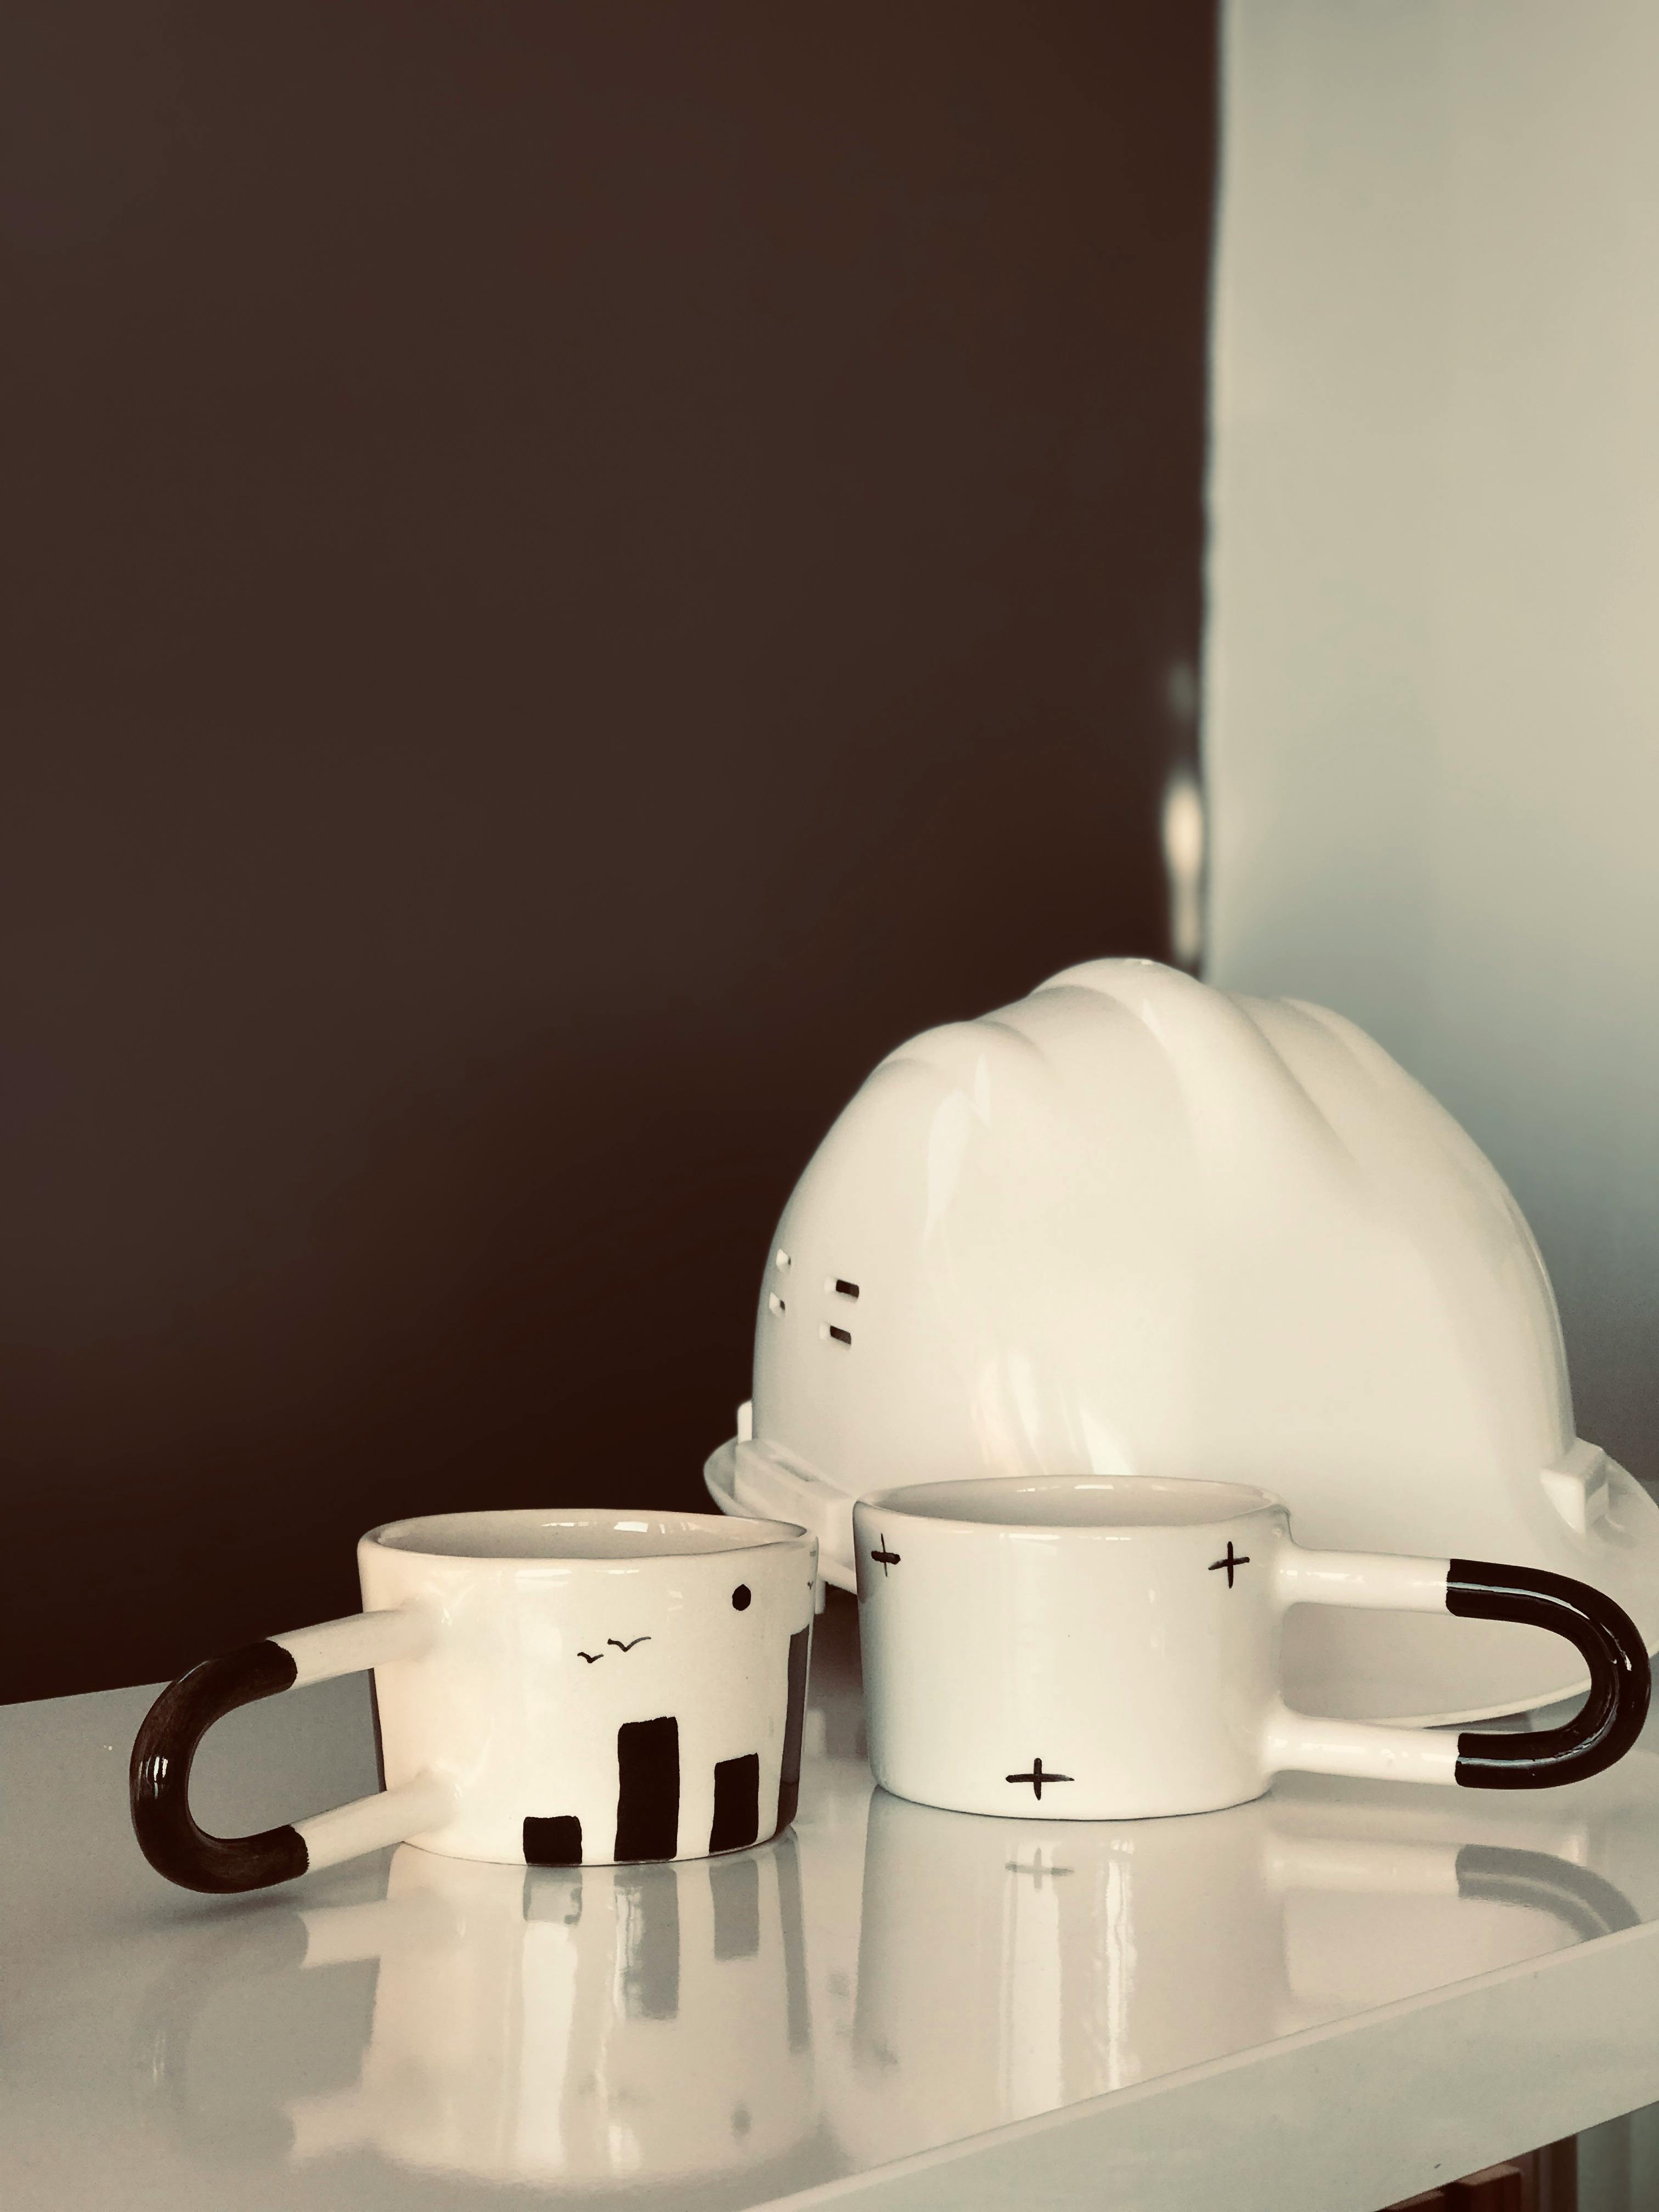 ceramic mugs beside the safety helmet